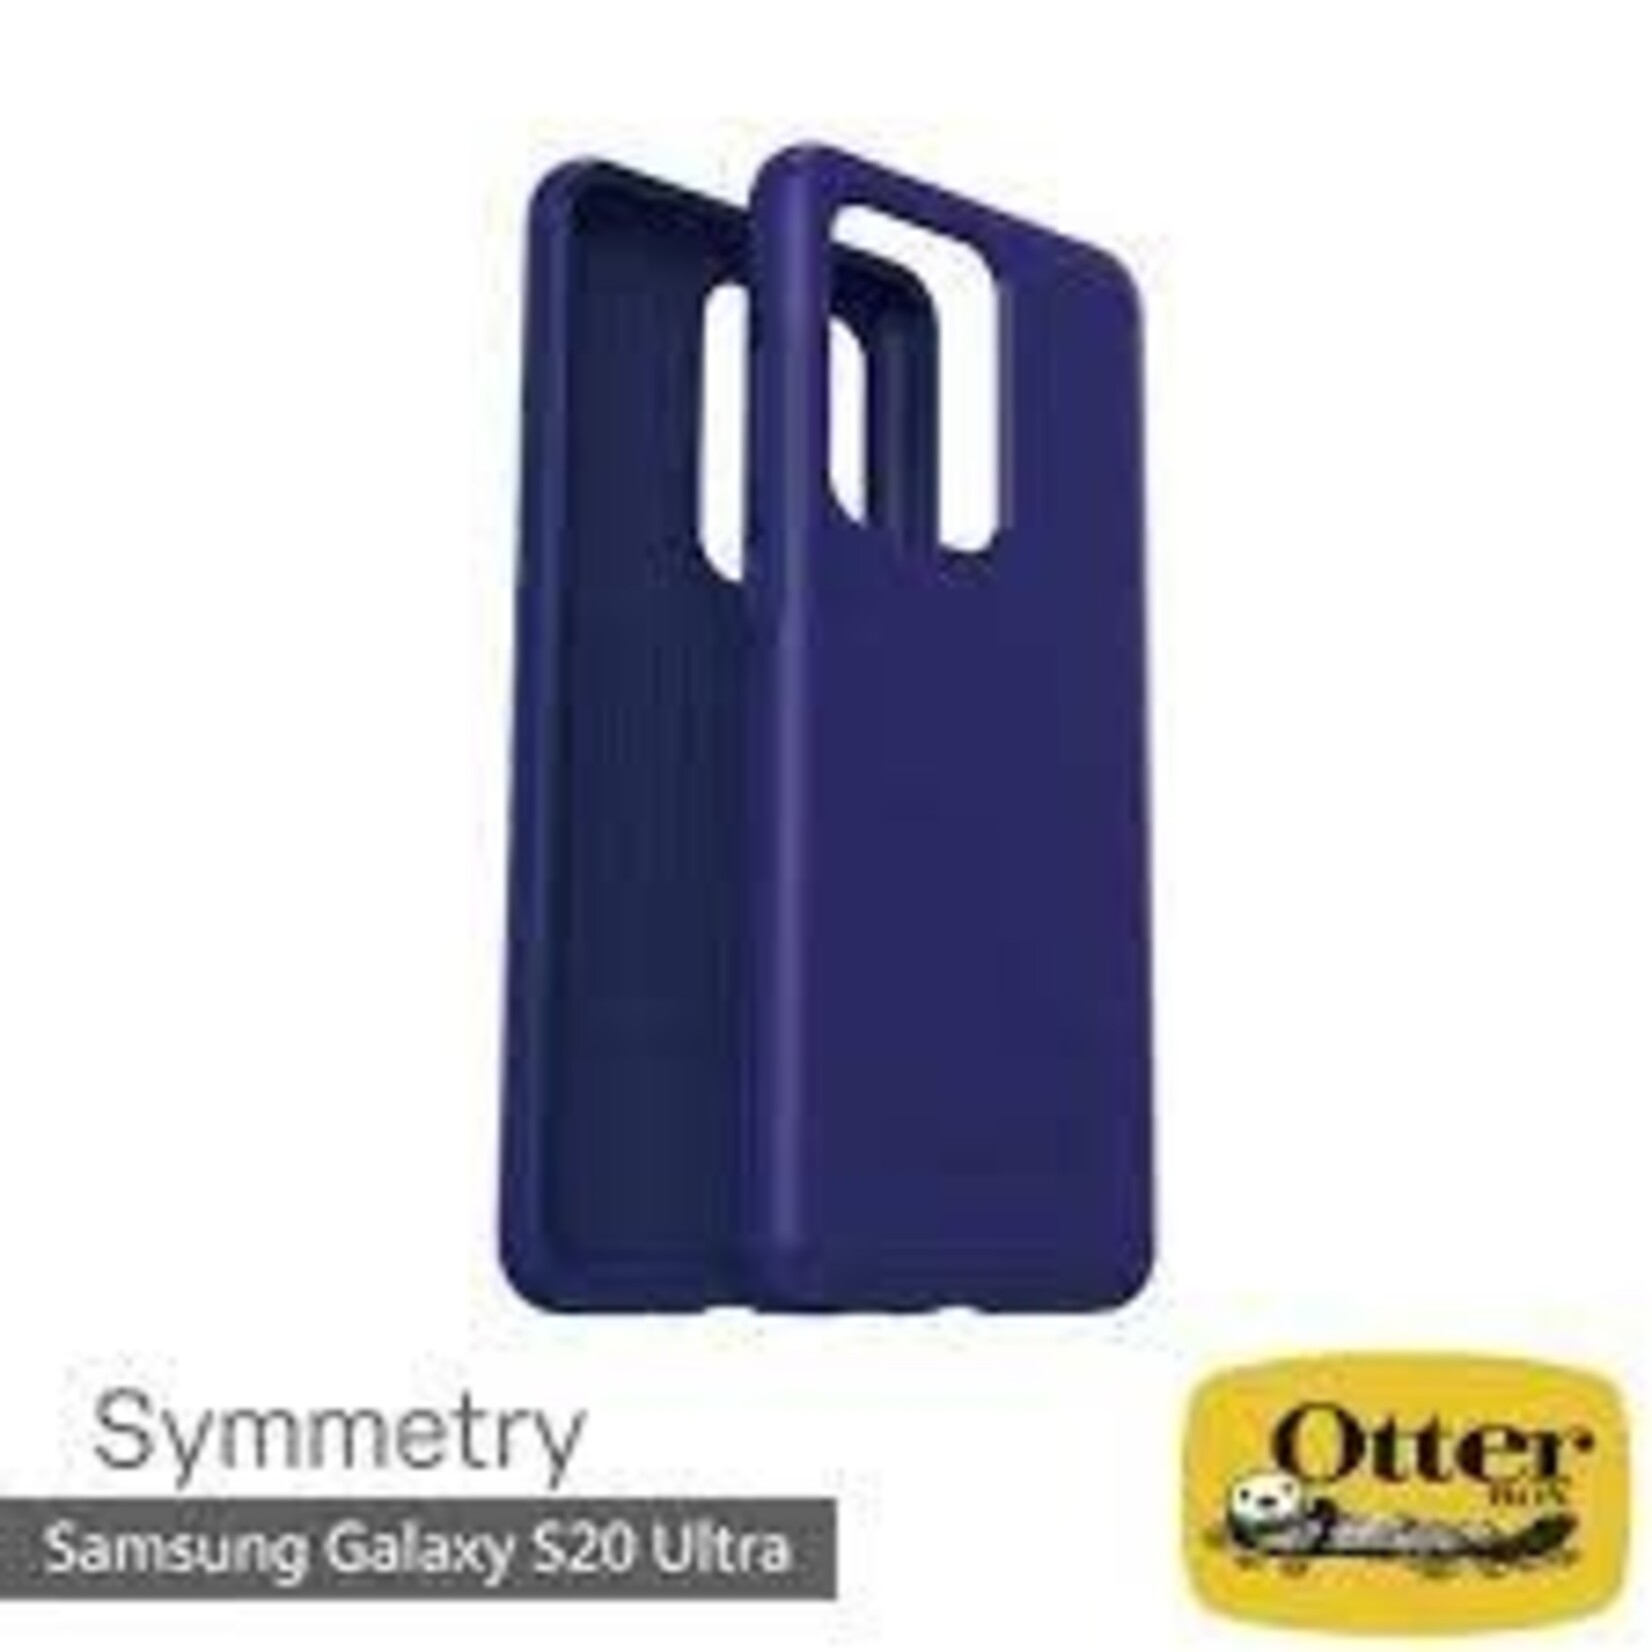 Samsung ÉTUI SAMSUNG S20 ULTRA - Otterbox Symmetry case Sapphire Secret